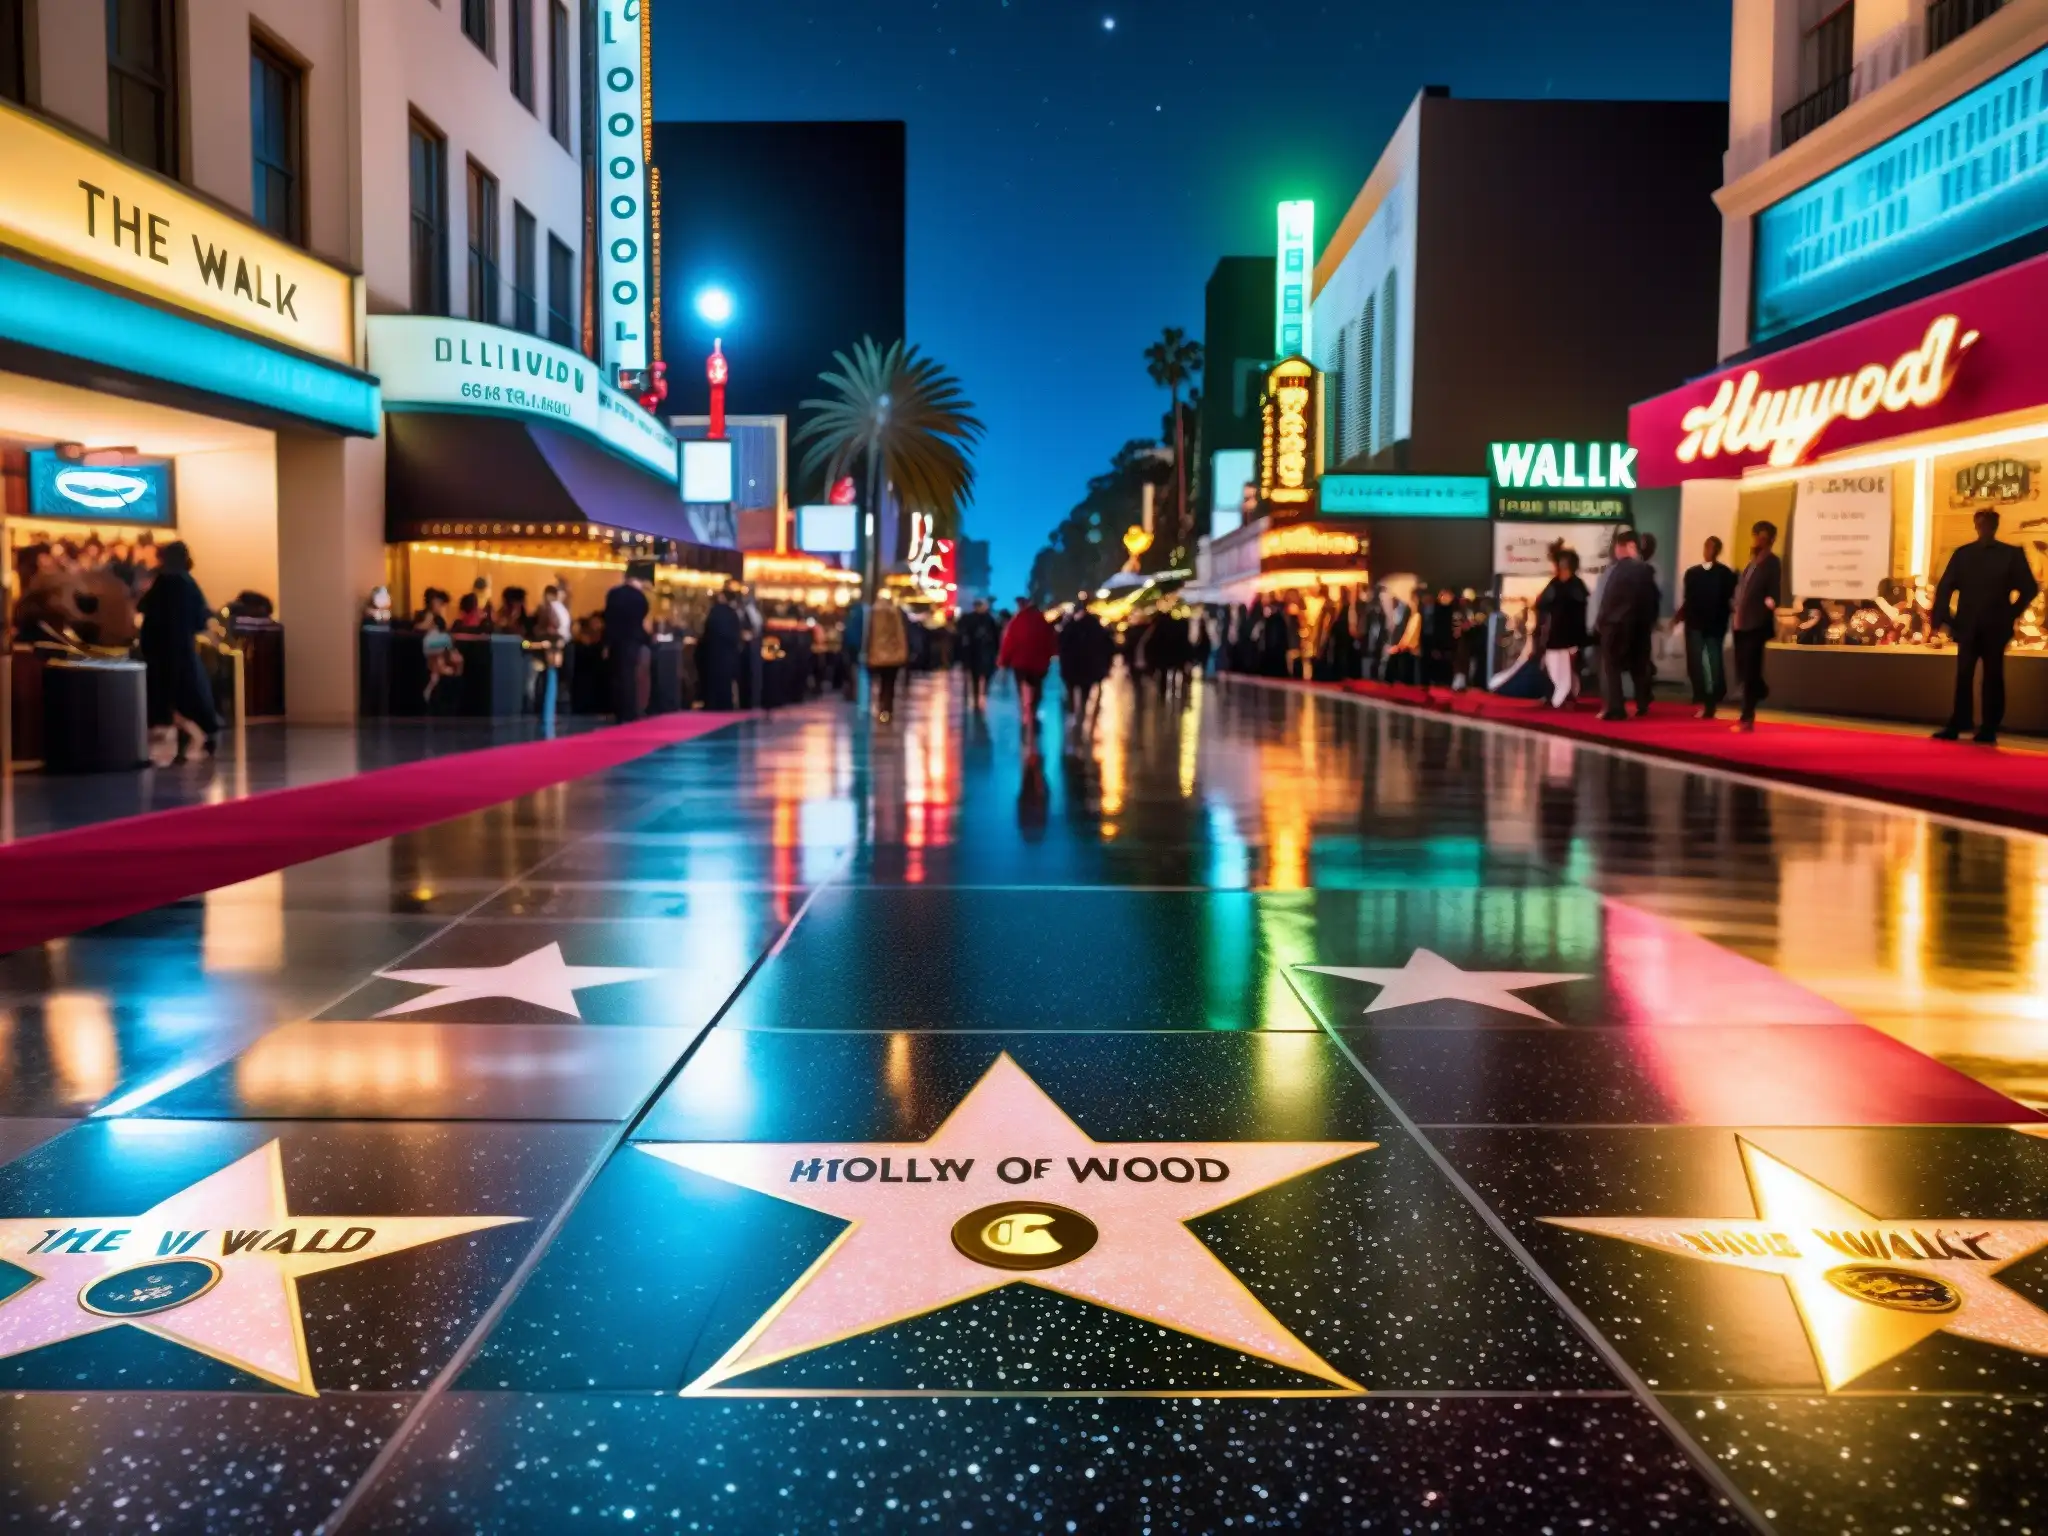 Imagen nocturna de la concurrida Hollywood Walk of Fame, con estrellas iluminadas por luces de la ciudad